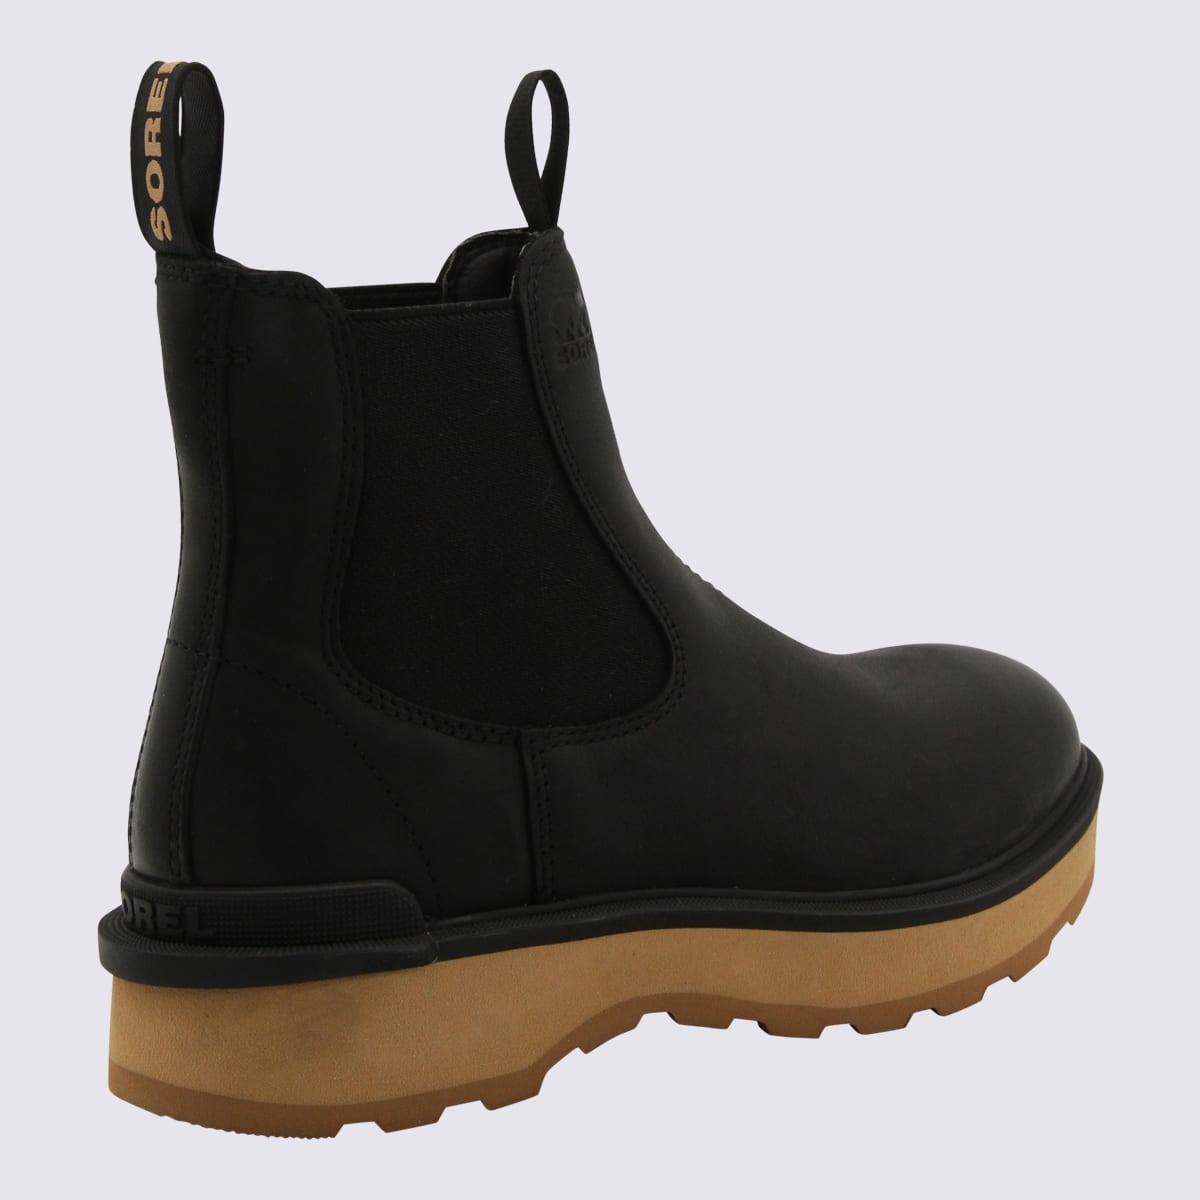 Shop Sorel Black Leather Chelsea Boots